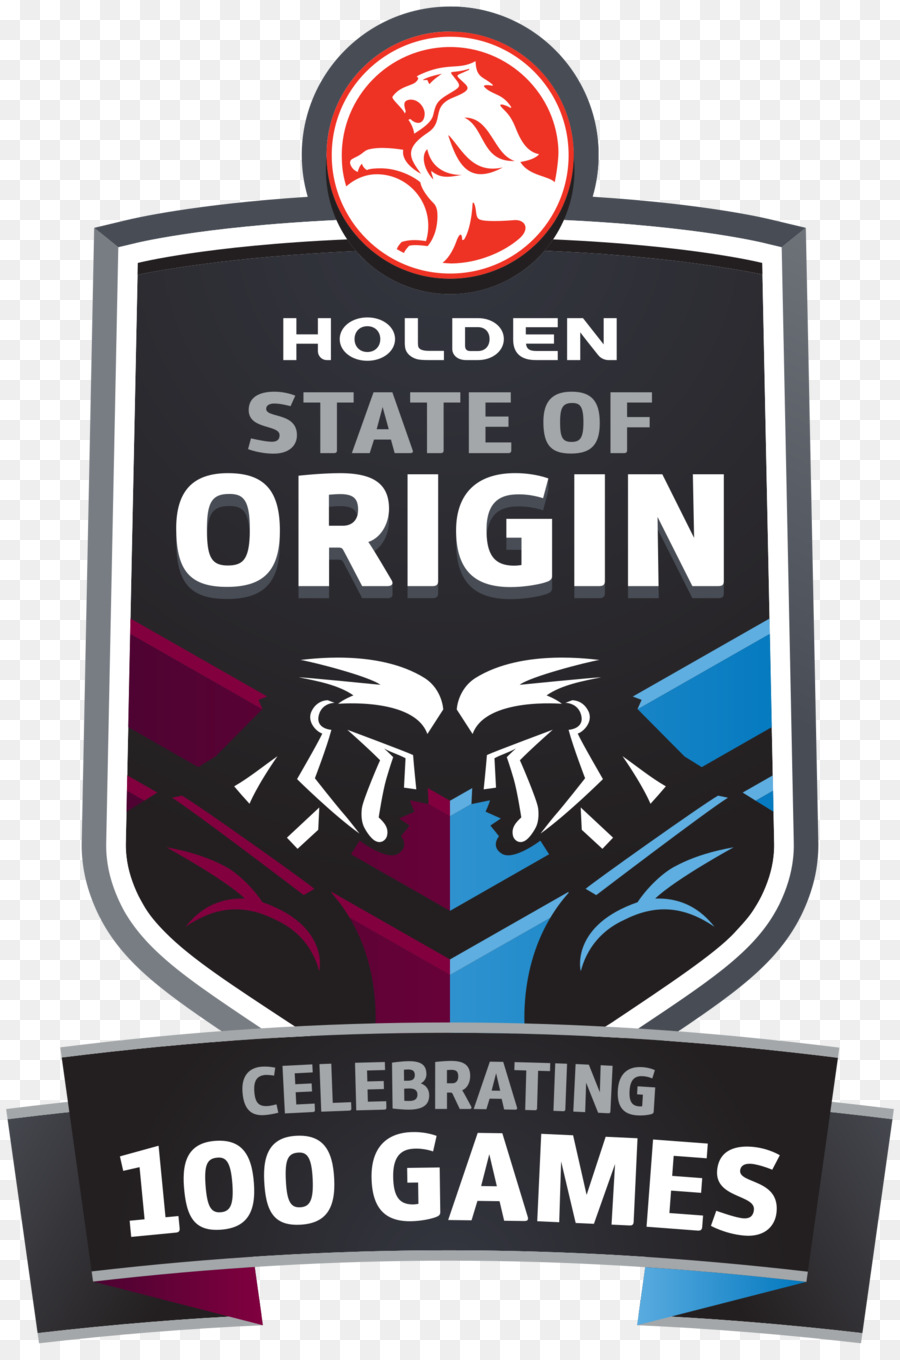 2016 Nước của Xứ loạt 2017 Nước của Xứ loạt Queensland đội bóng bầu dục giải Quốc gia bóng bầu dục tình Trạng của Xứ Loạt - 1 Trò chơi ở Melbourne - tốt nghiệp mùa áp phích